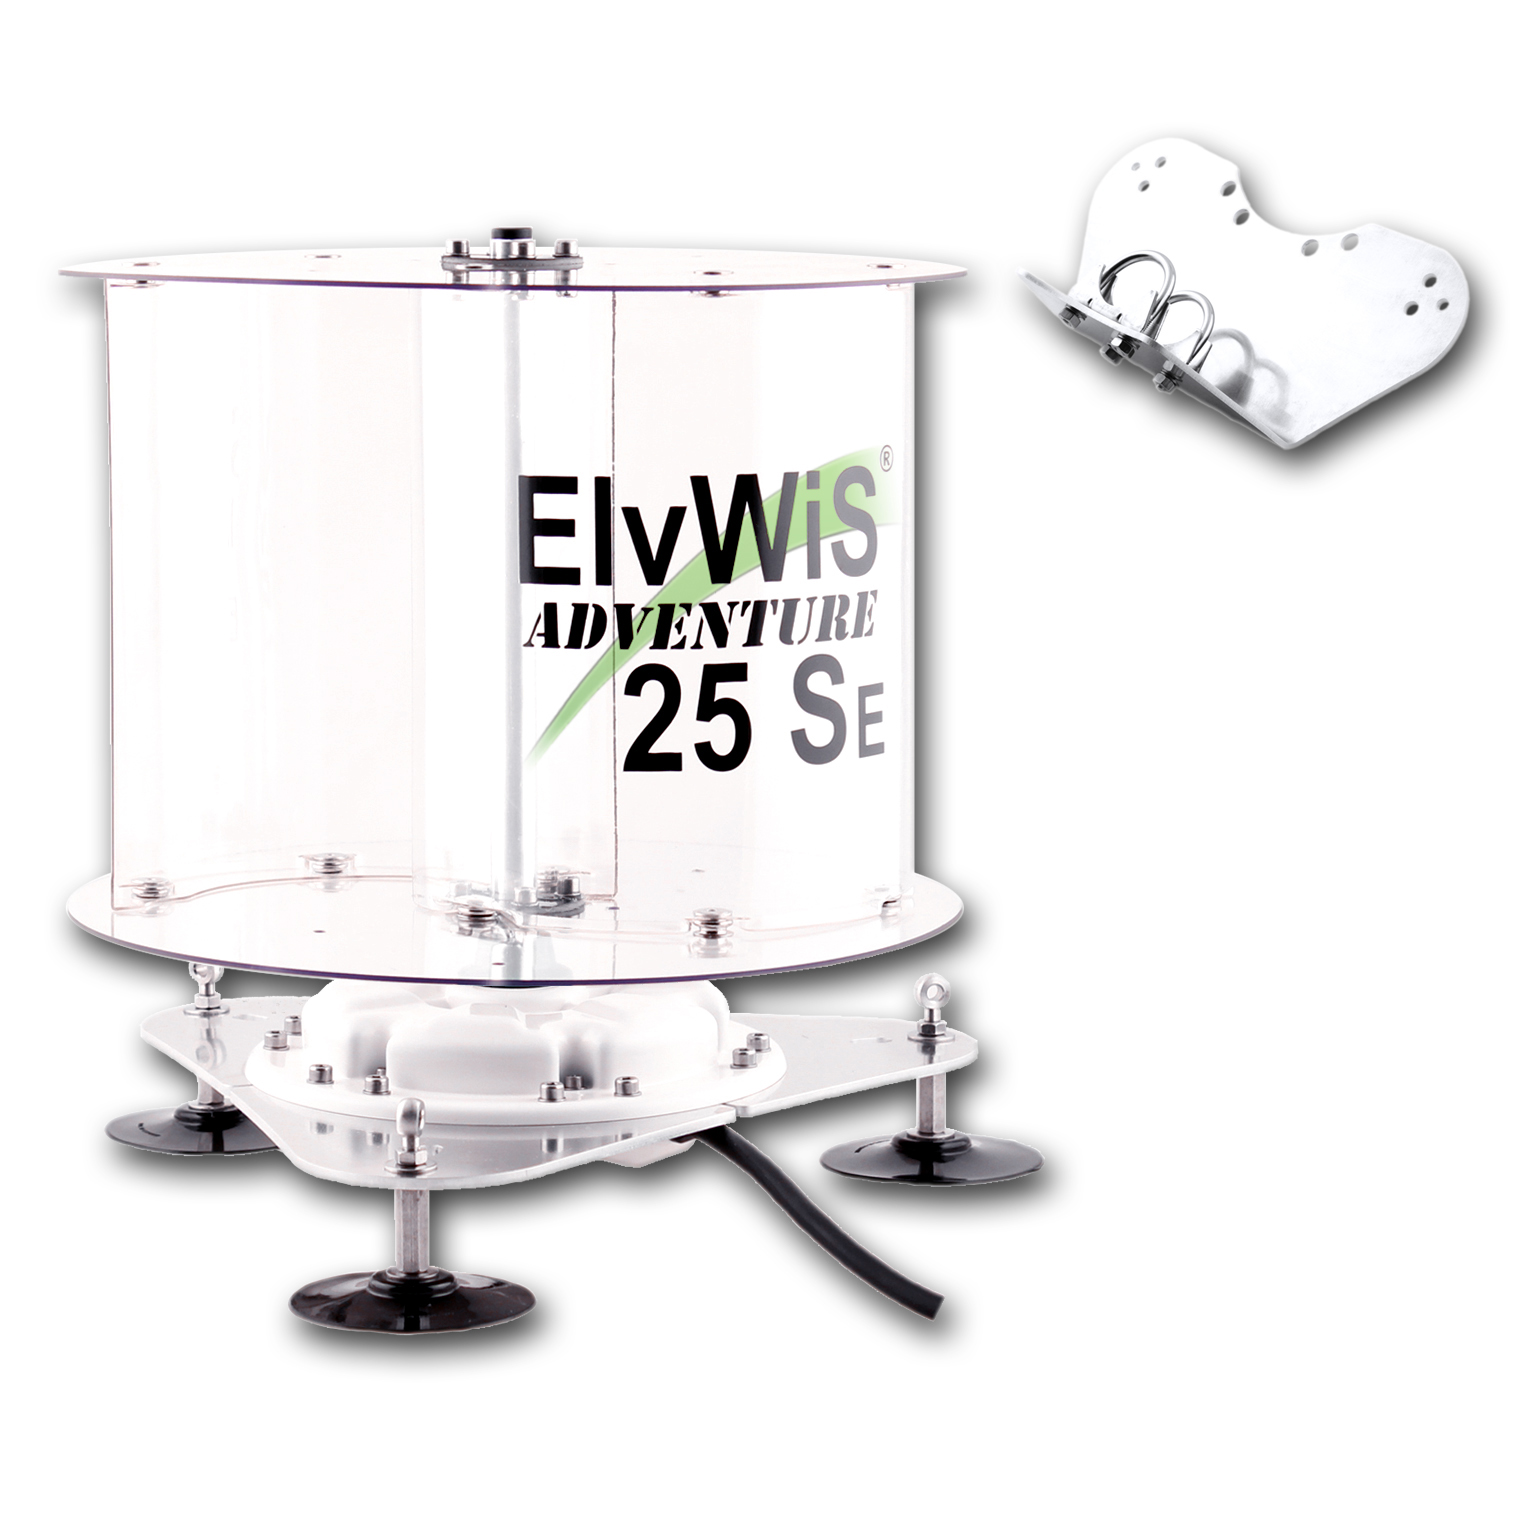 ElvWiS ADVENTURE 25SE Economy Wind Turbine with Mount